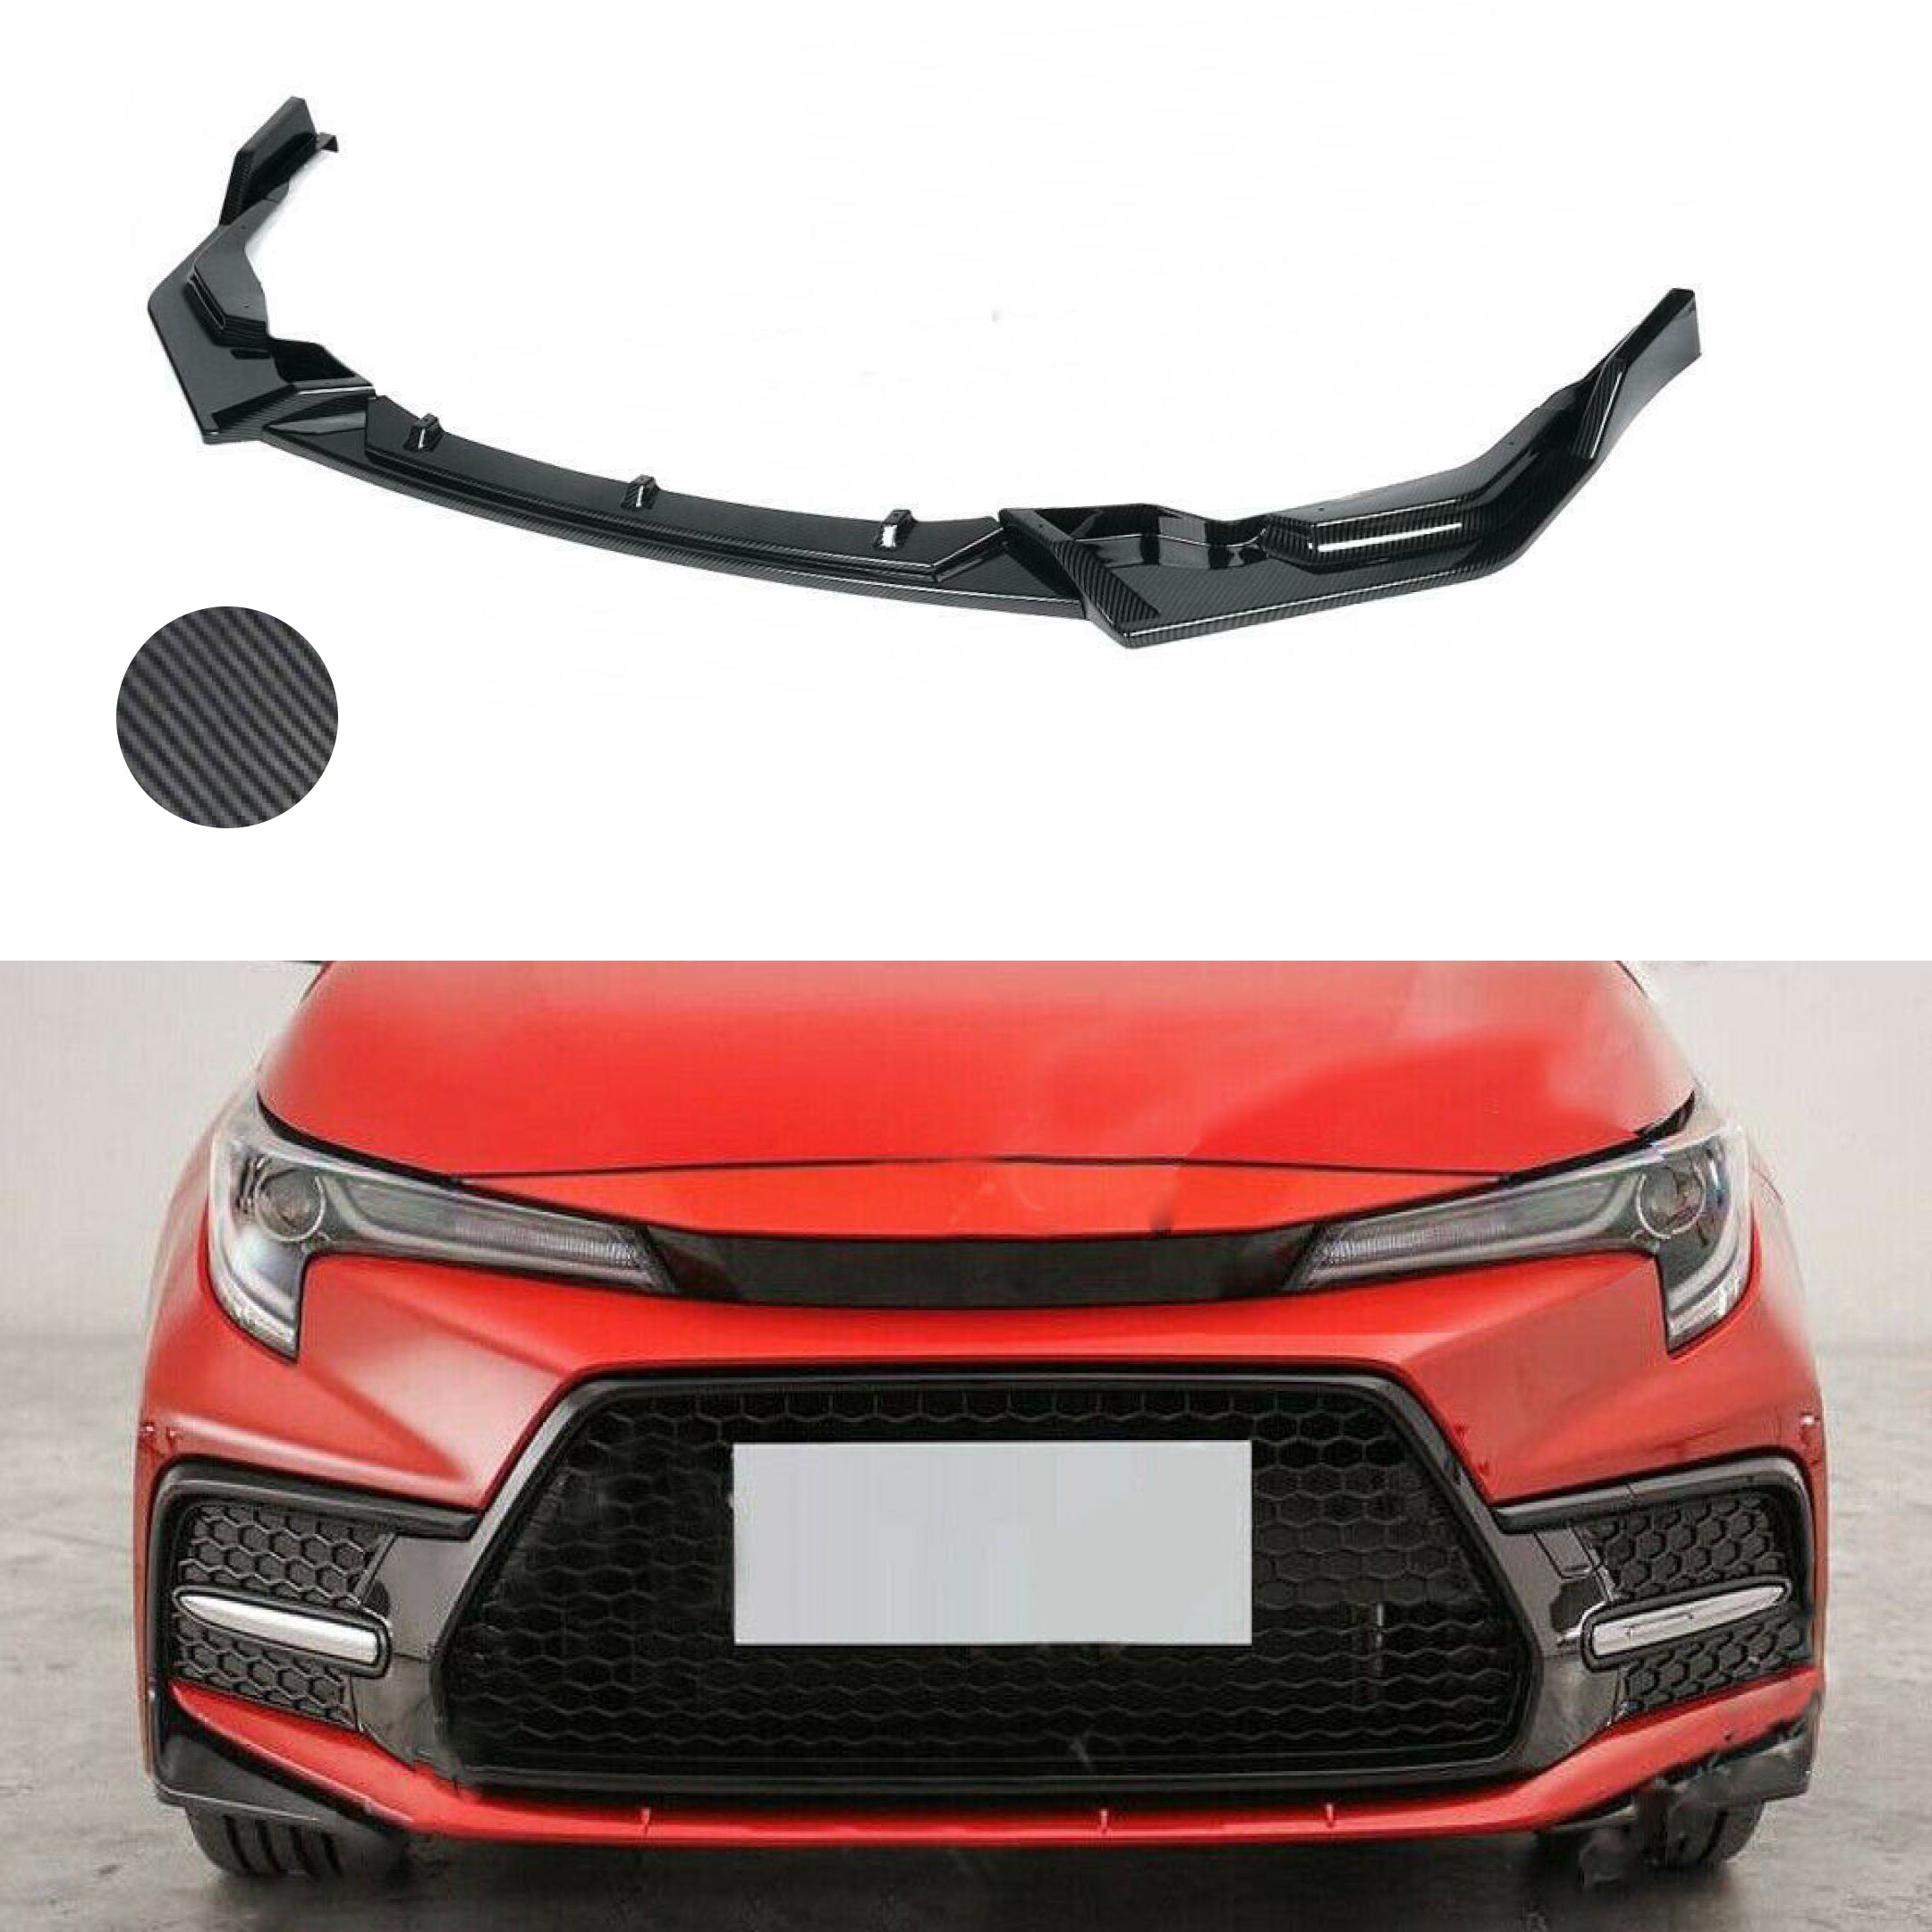 Se adapta al alerón del cuerpo del labio del parachoques delantero del Toyota Corolla SE XSE 2020-2021 (estampado de fibra de carbono)